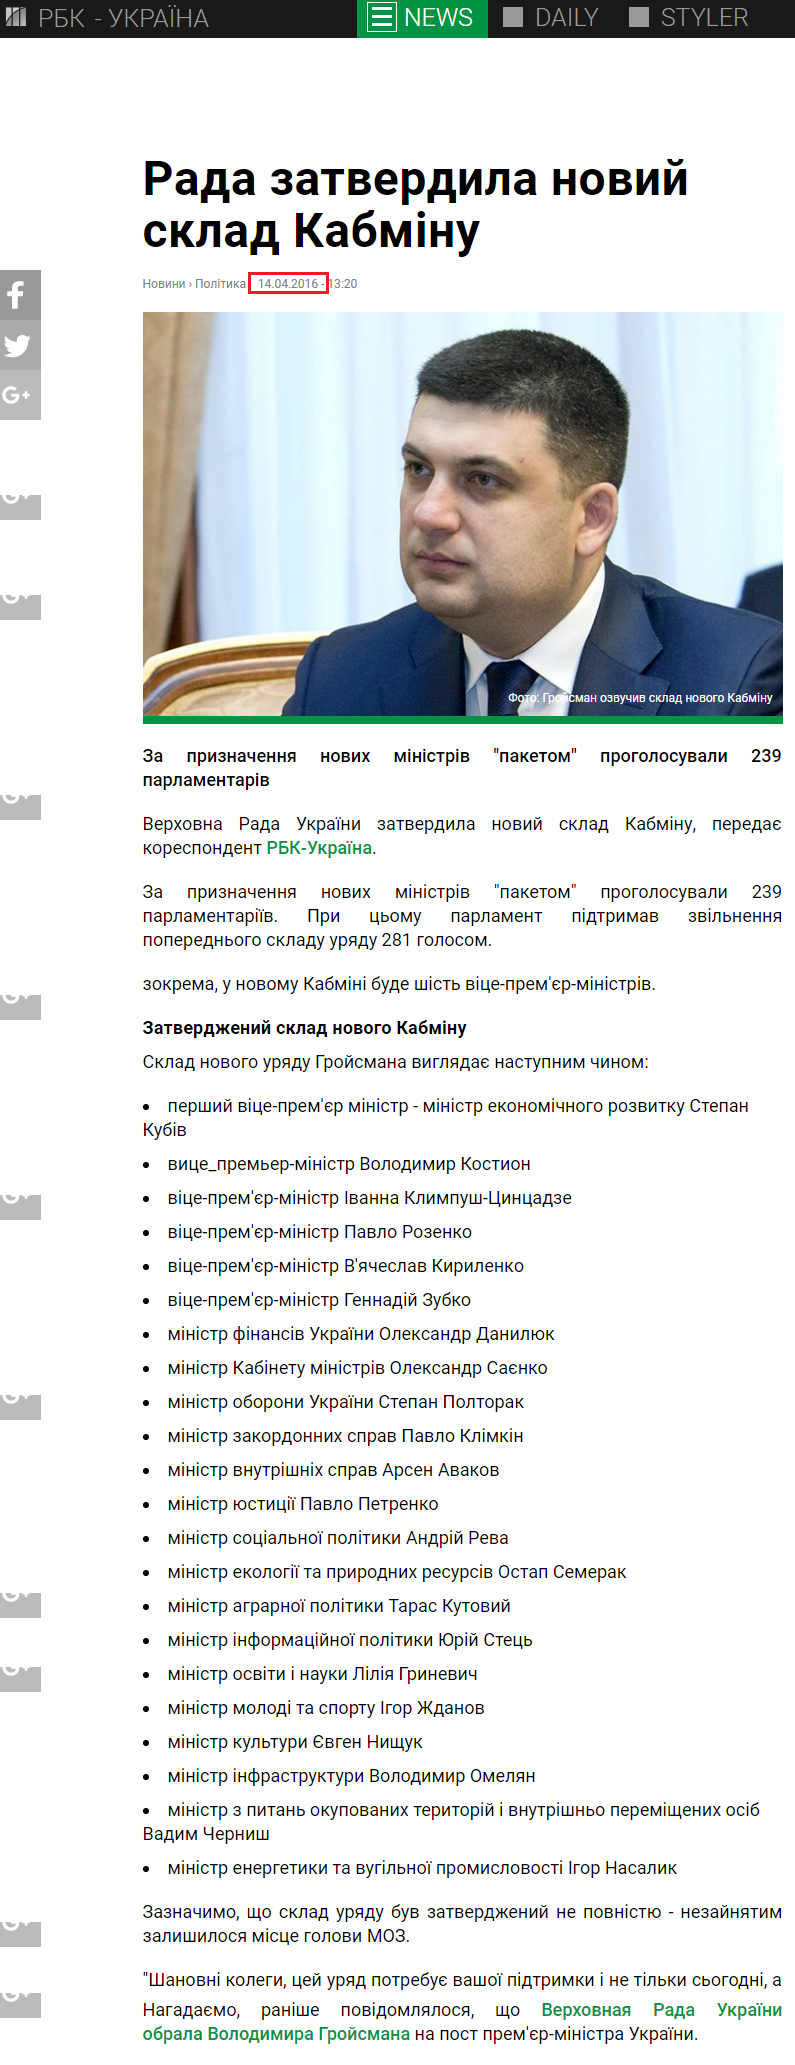 https://www.rbc.ua/ukr/news/rada-utverdila-novyy-sostav-kabmina-1460629179.html